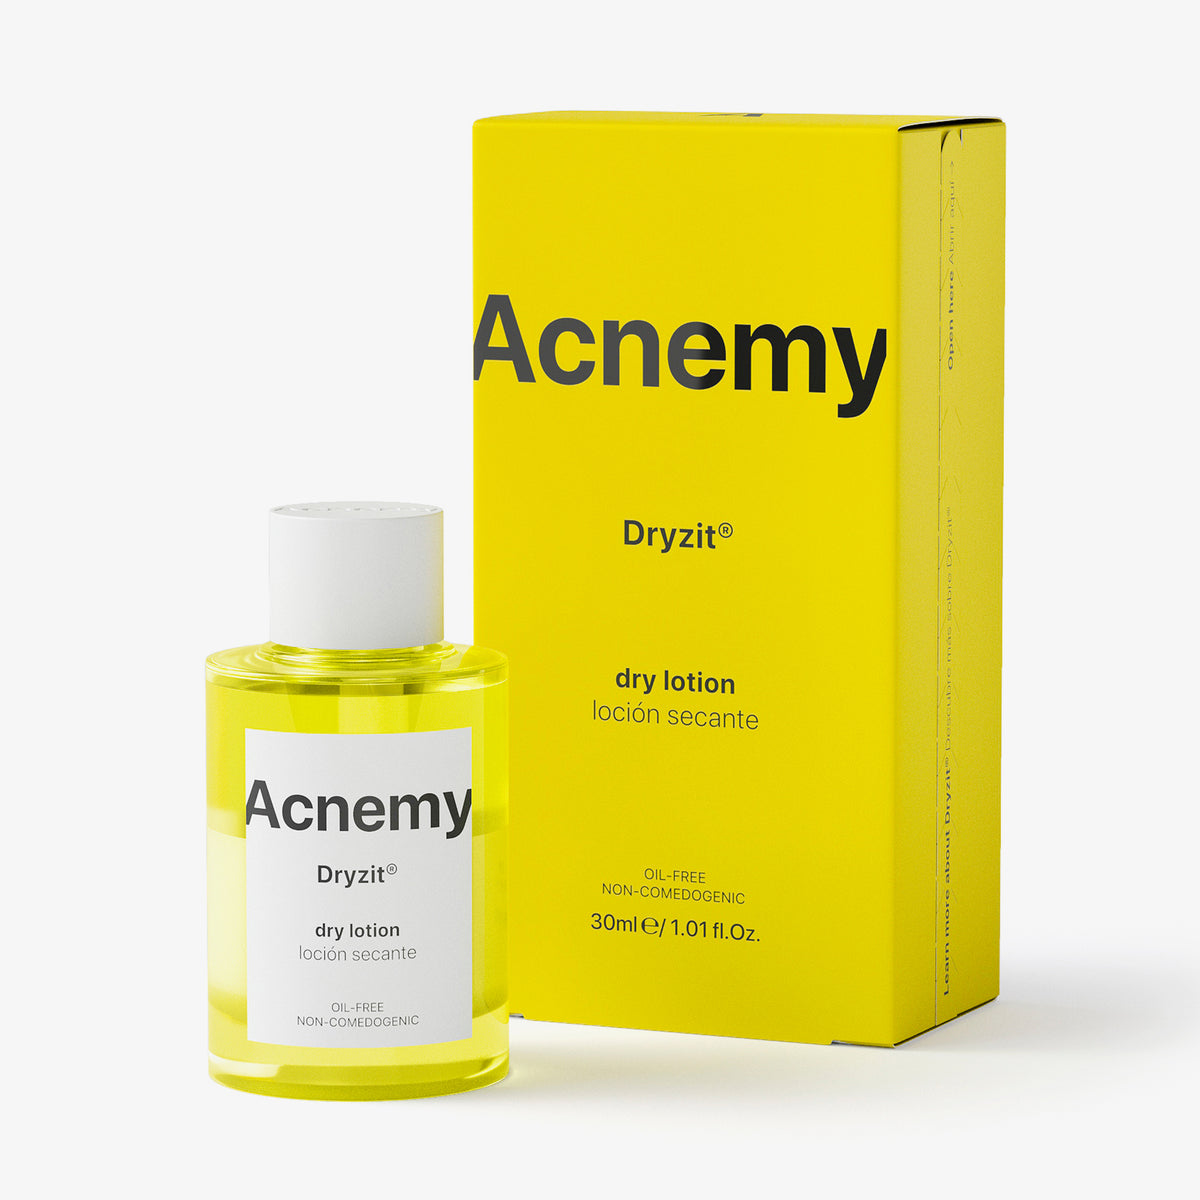 Eine Flasche Acnemy Dryzit® plus Verpackung vor weißem Hintergrund